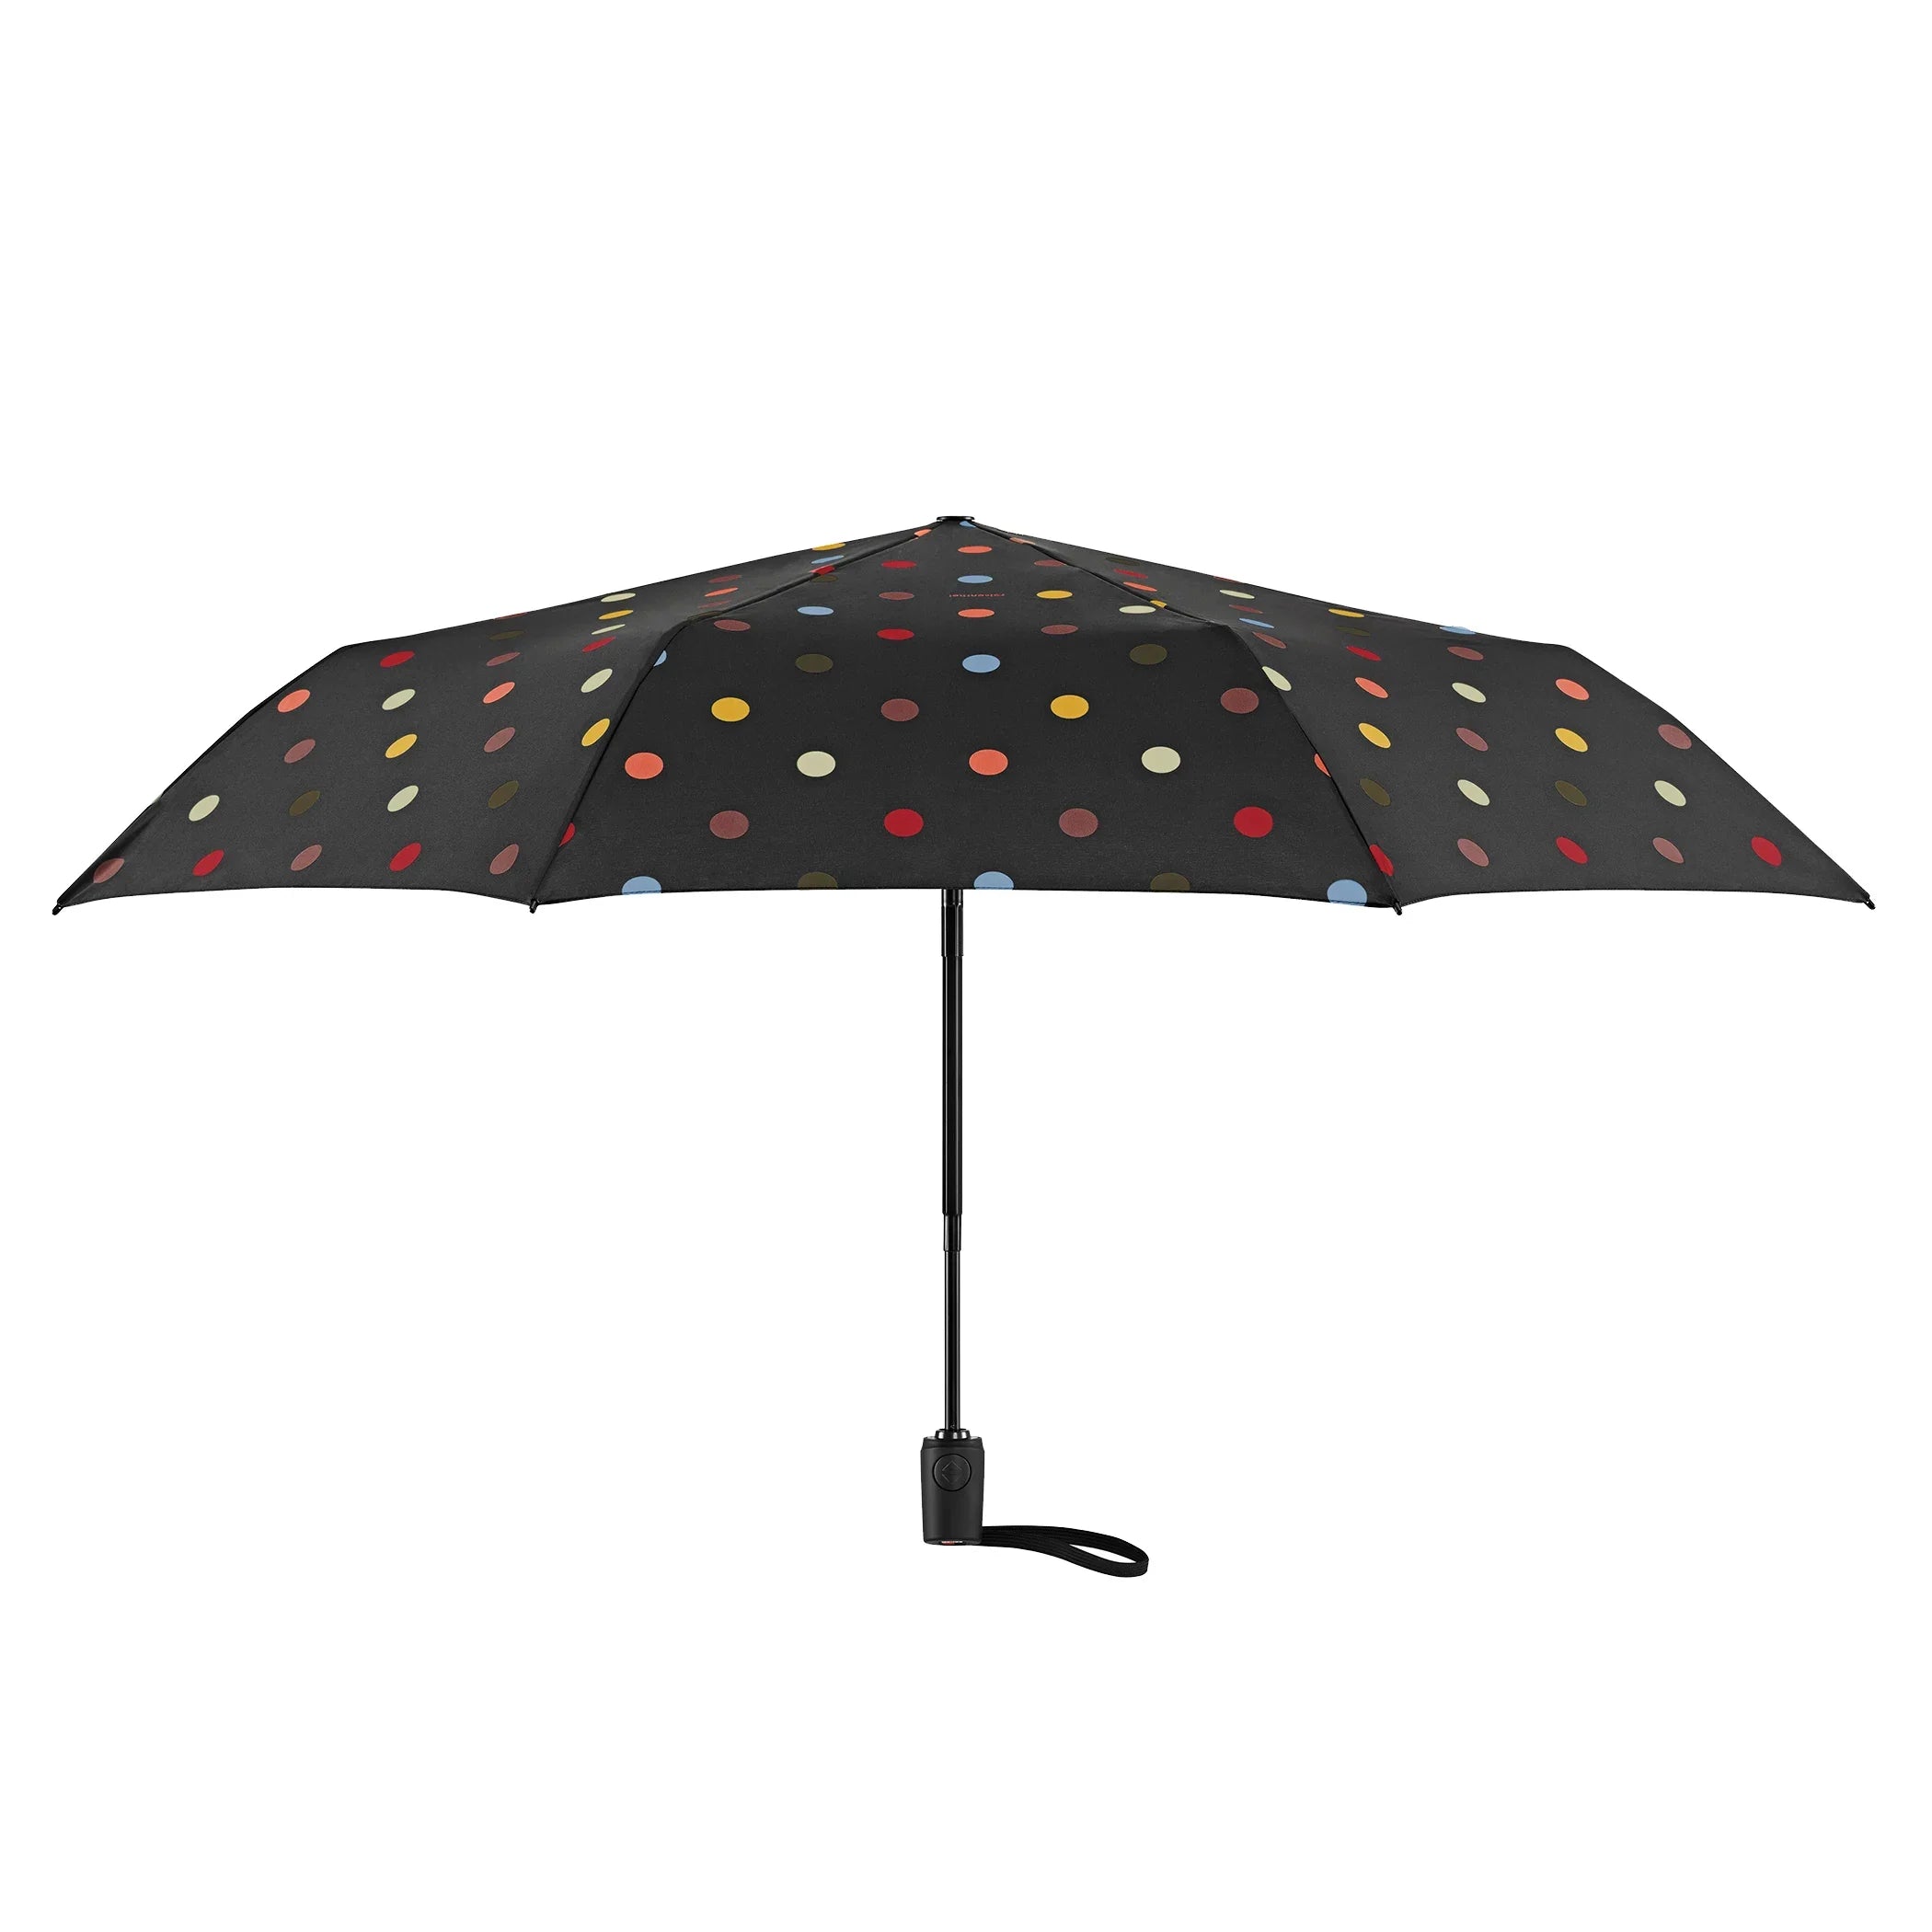 Reisenthel Travelling Umbrella Pocket Mini 25 cm - Baroque Taupe